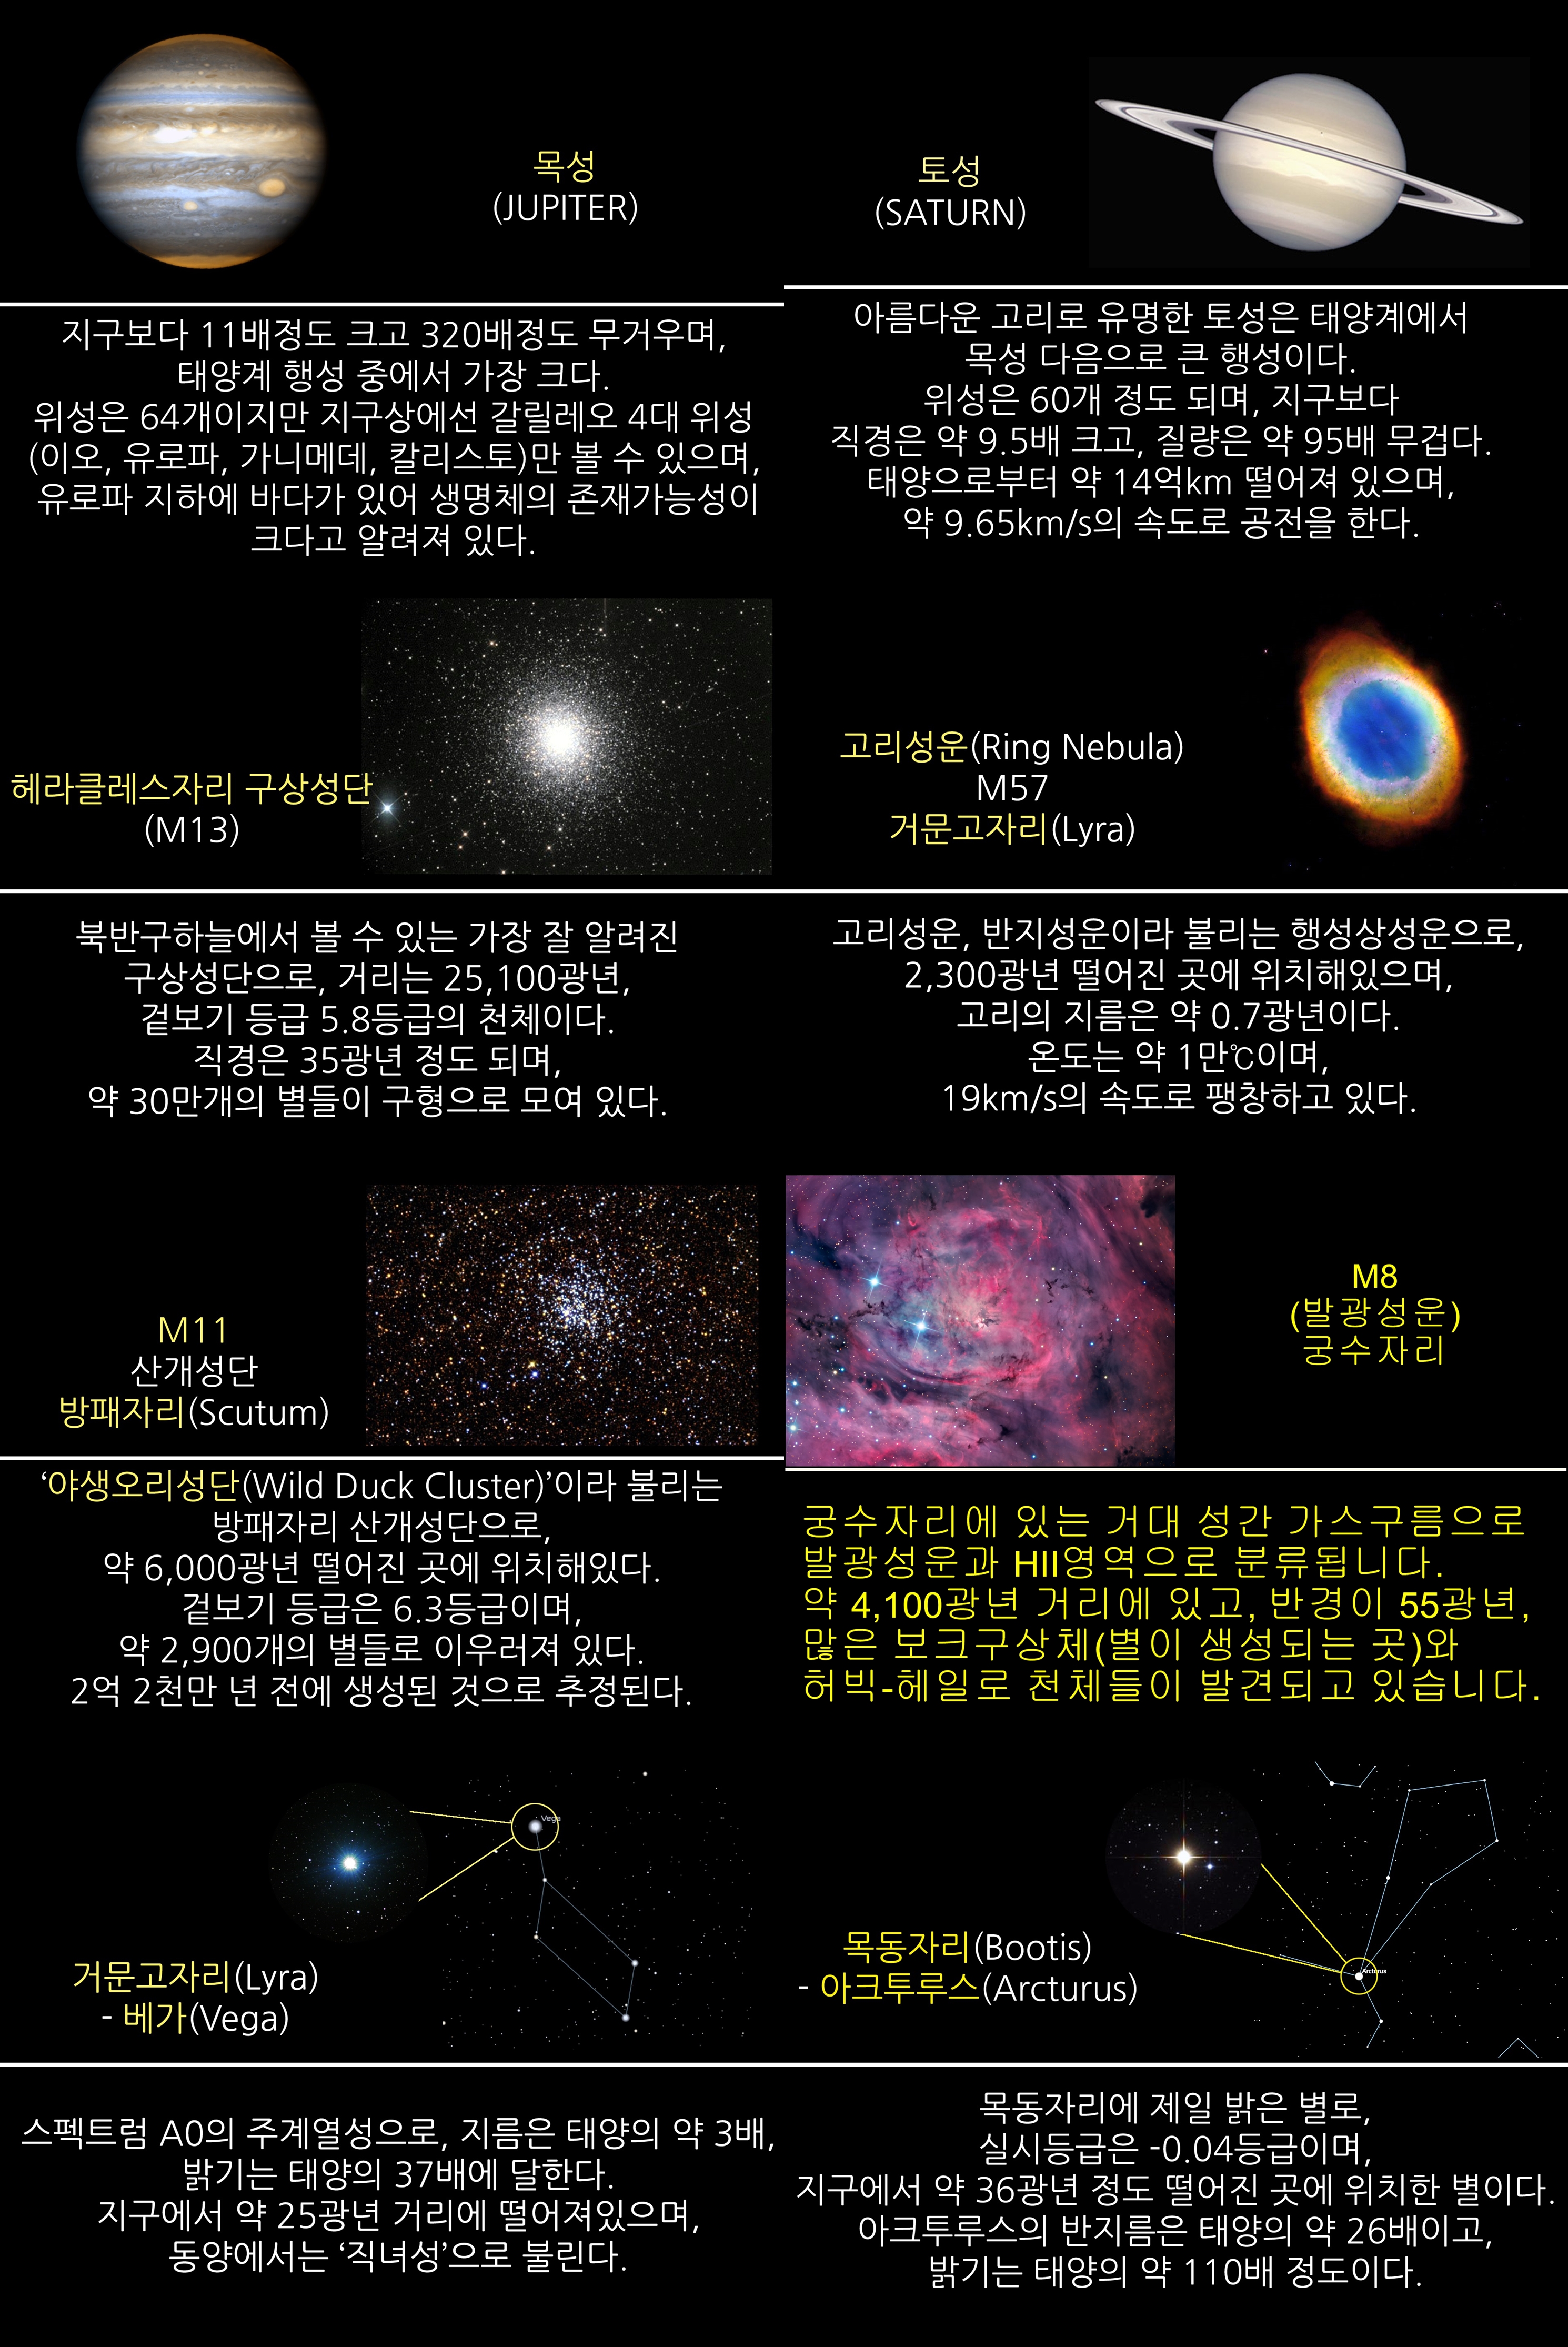 2017년 7월 주요 천체관측 대상